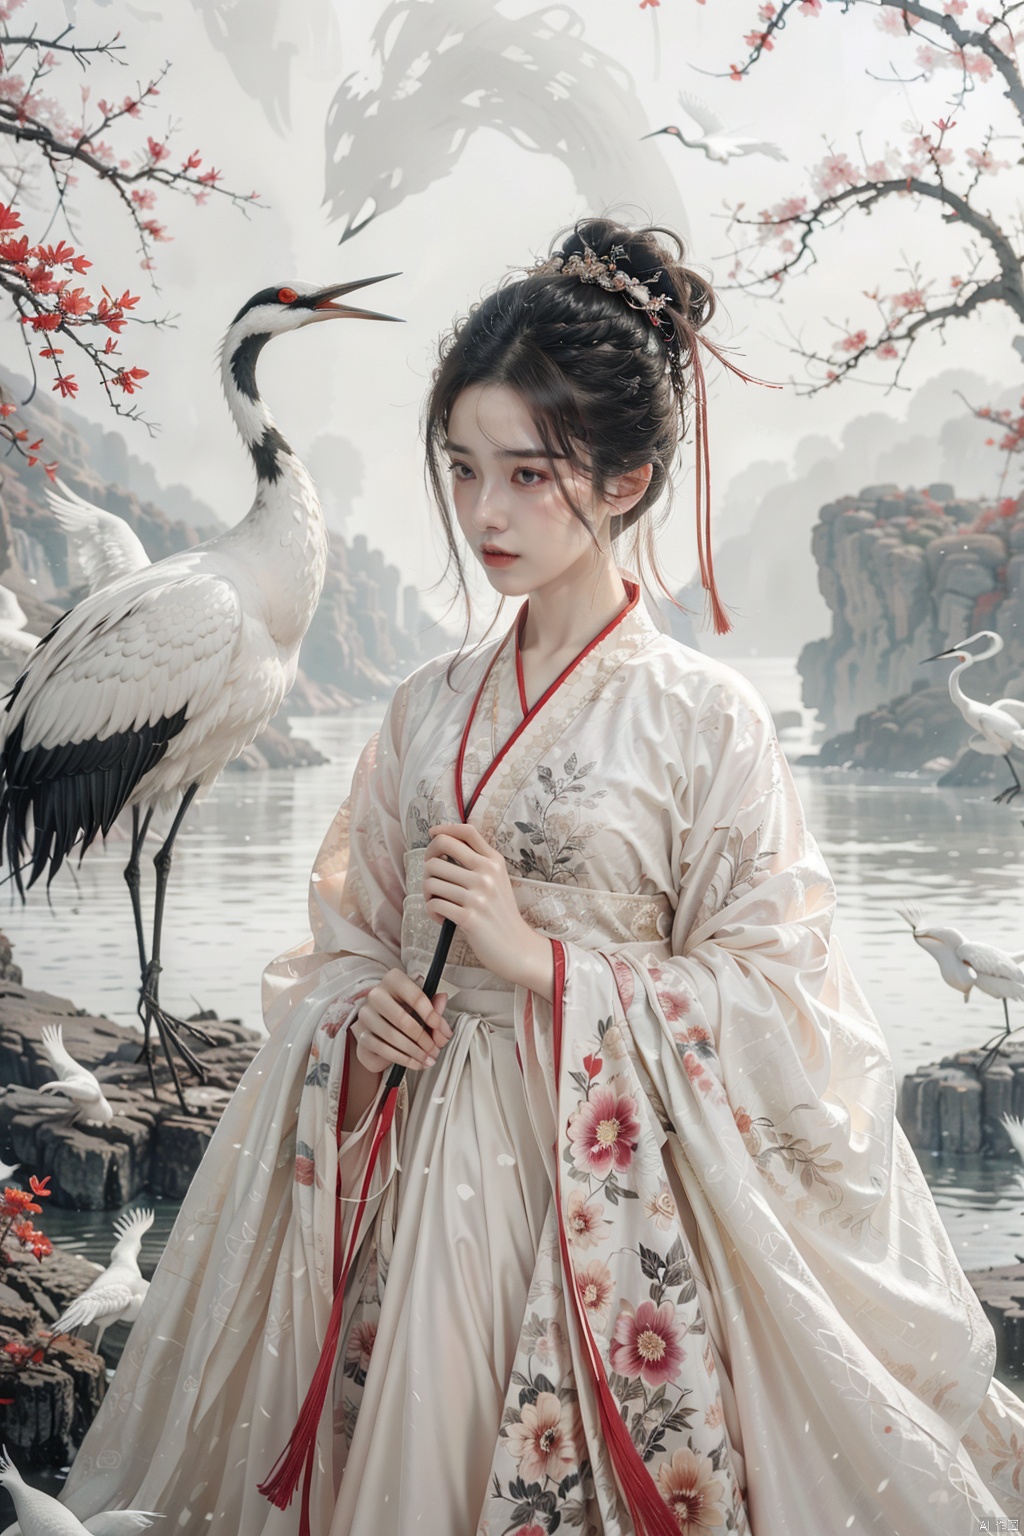  a girl,xianjing,hanfu,crane,upper body